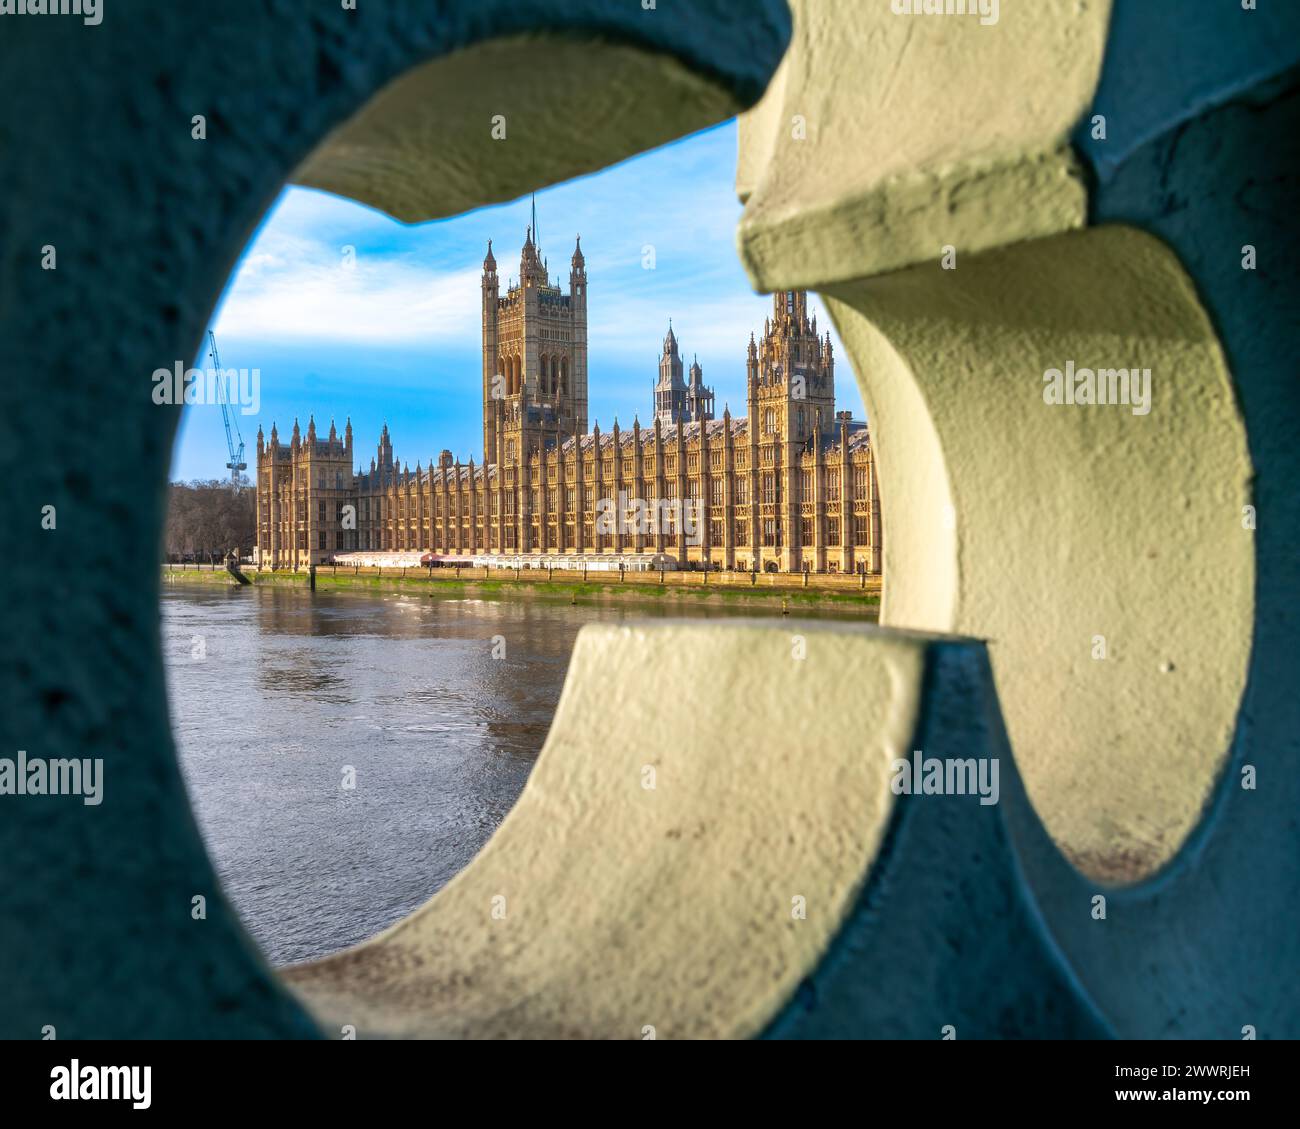 Vue unique sur les maisons emblématiques du Parlement et Big Ben à travers un cadre circulaire sur la Tamise, Londres. Banque D'Images